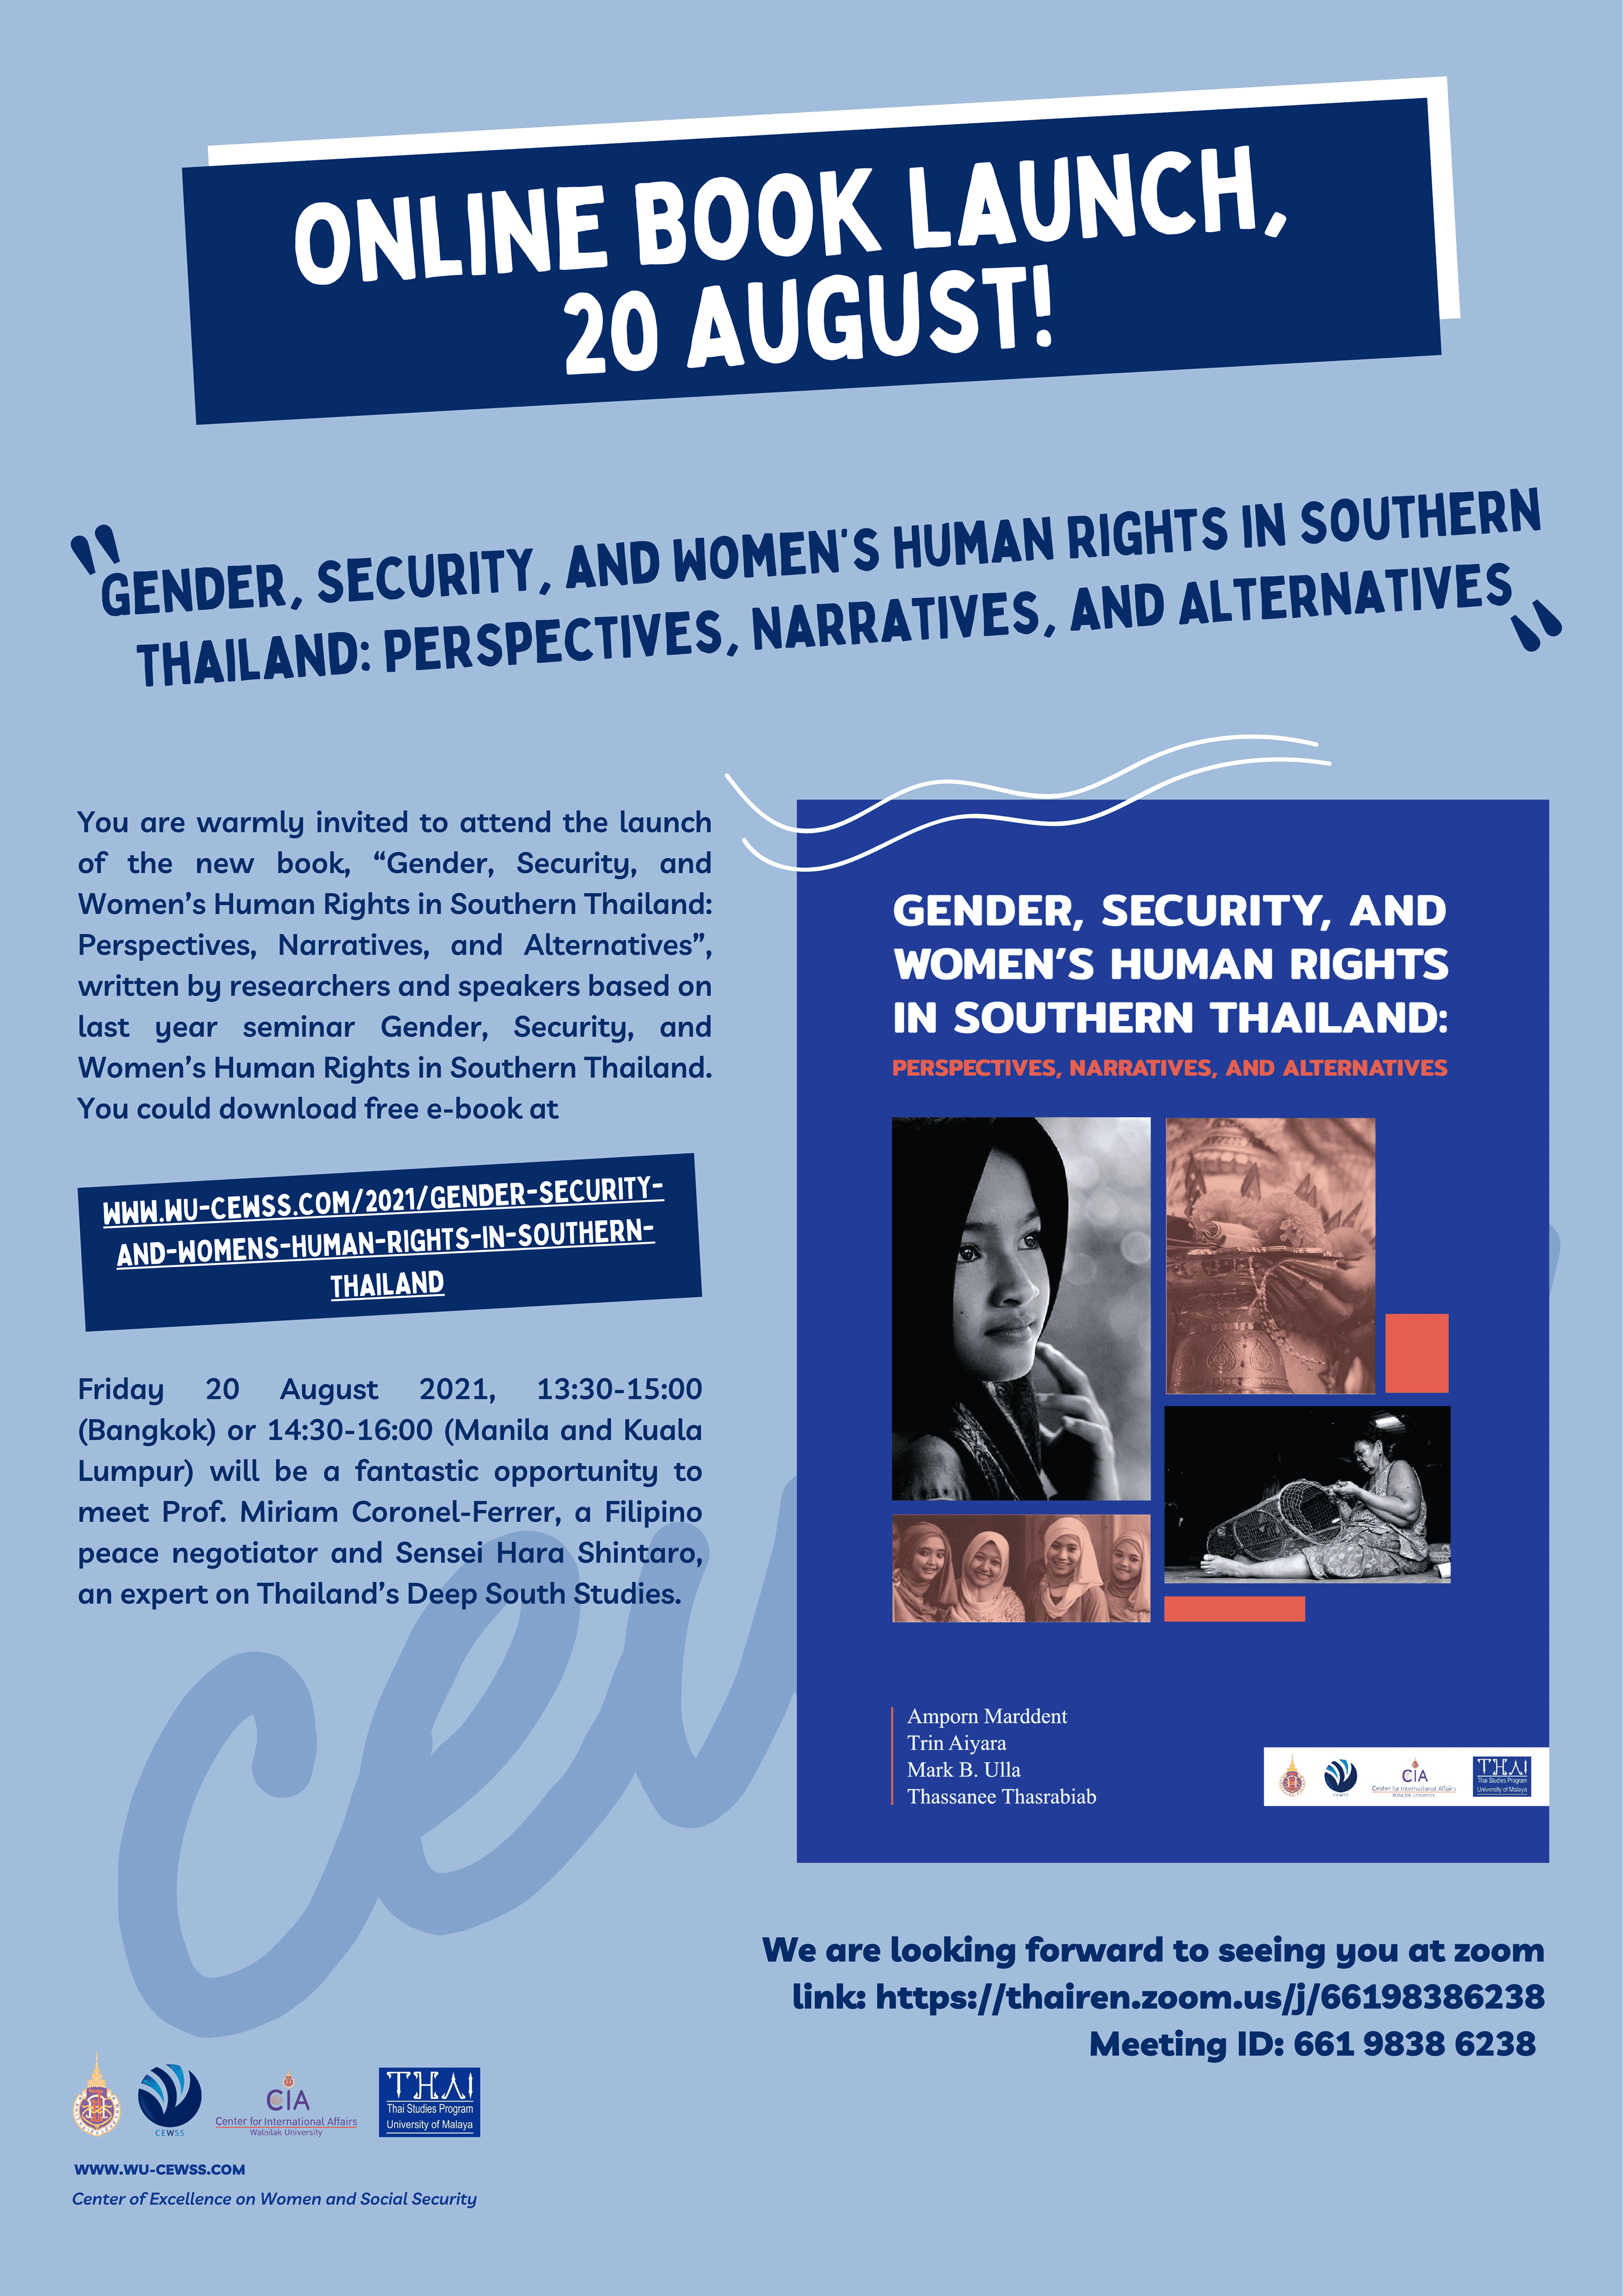 ประชาสัมพันธ์โครงการสัมมนาระดับนานาชาติเรื่อง "Gender, Security, and Women's Human Rights in Southern Thailand"